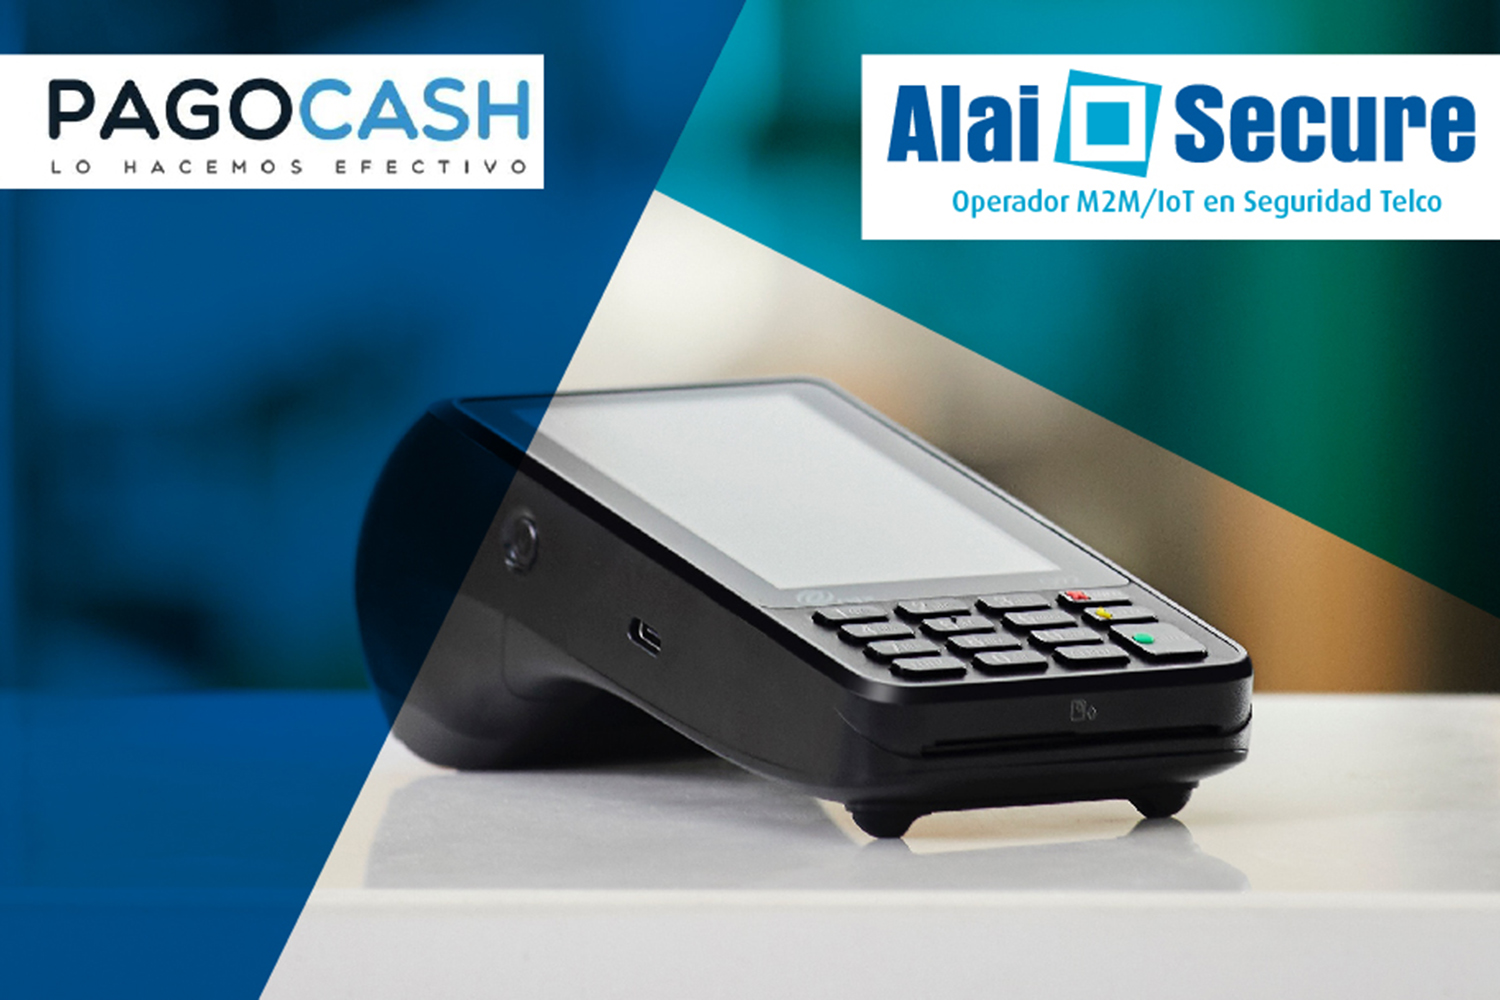 La tecnología de Alai Secure facilitará que PagoCash pueda personalizar sus comunicaciones